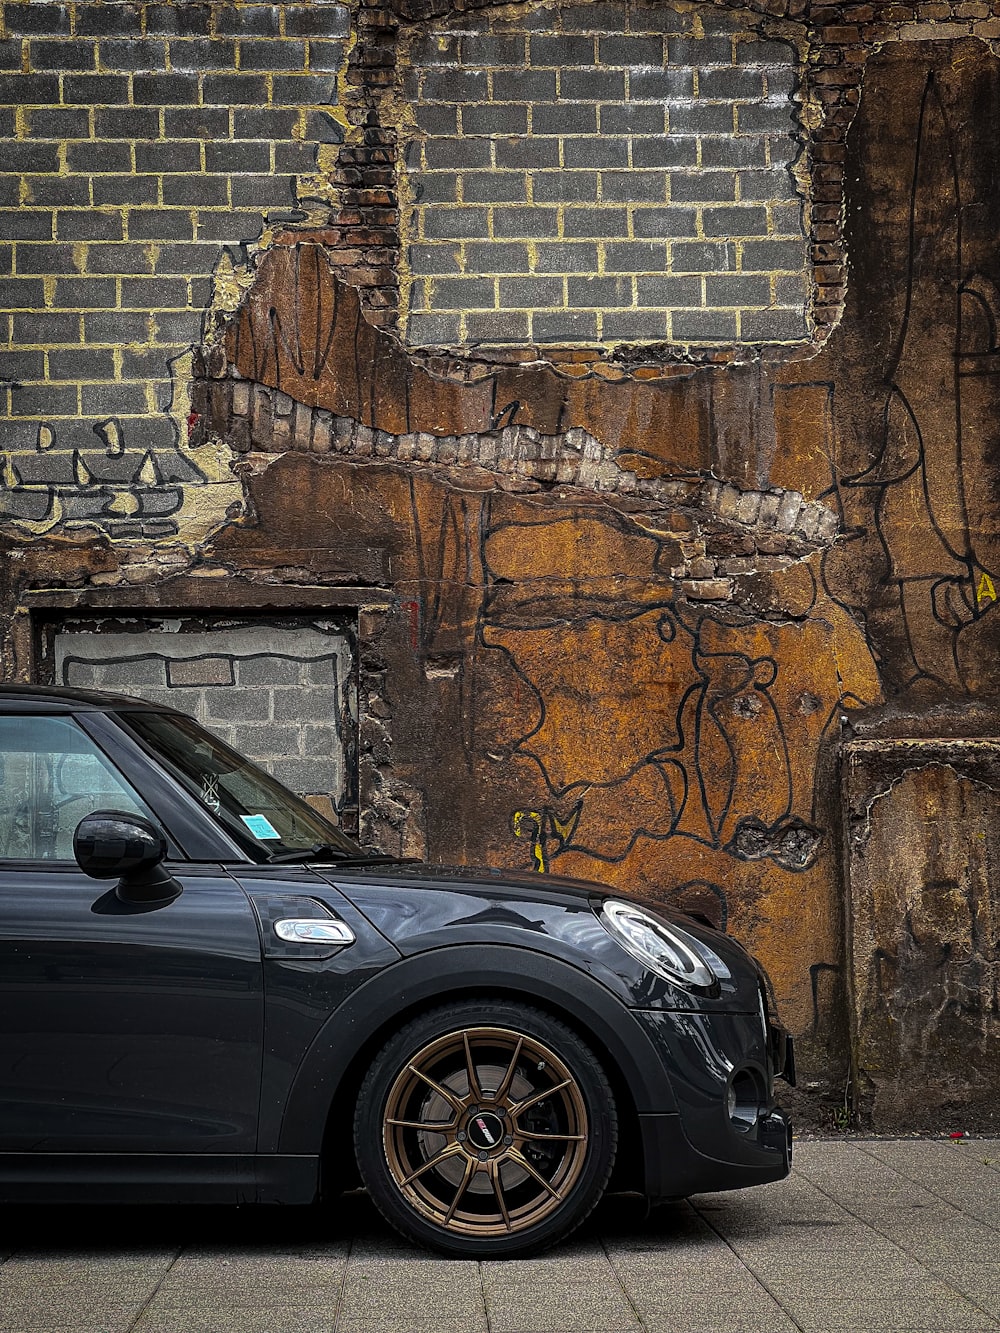 une voiture garée devant un mur de briques avec des graffitis dessus